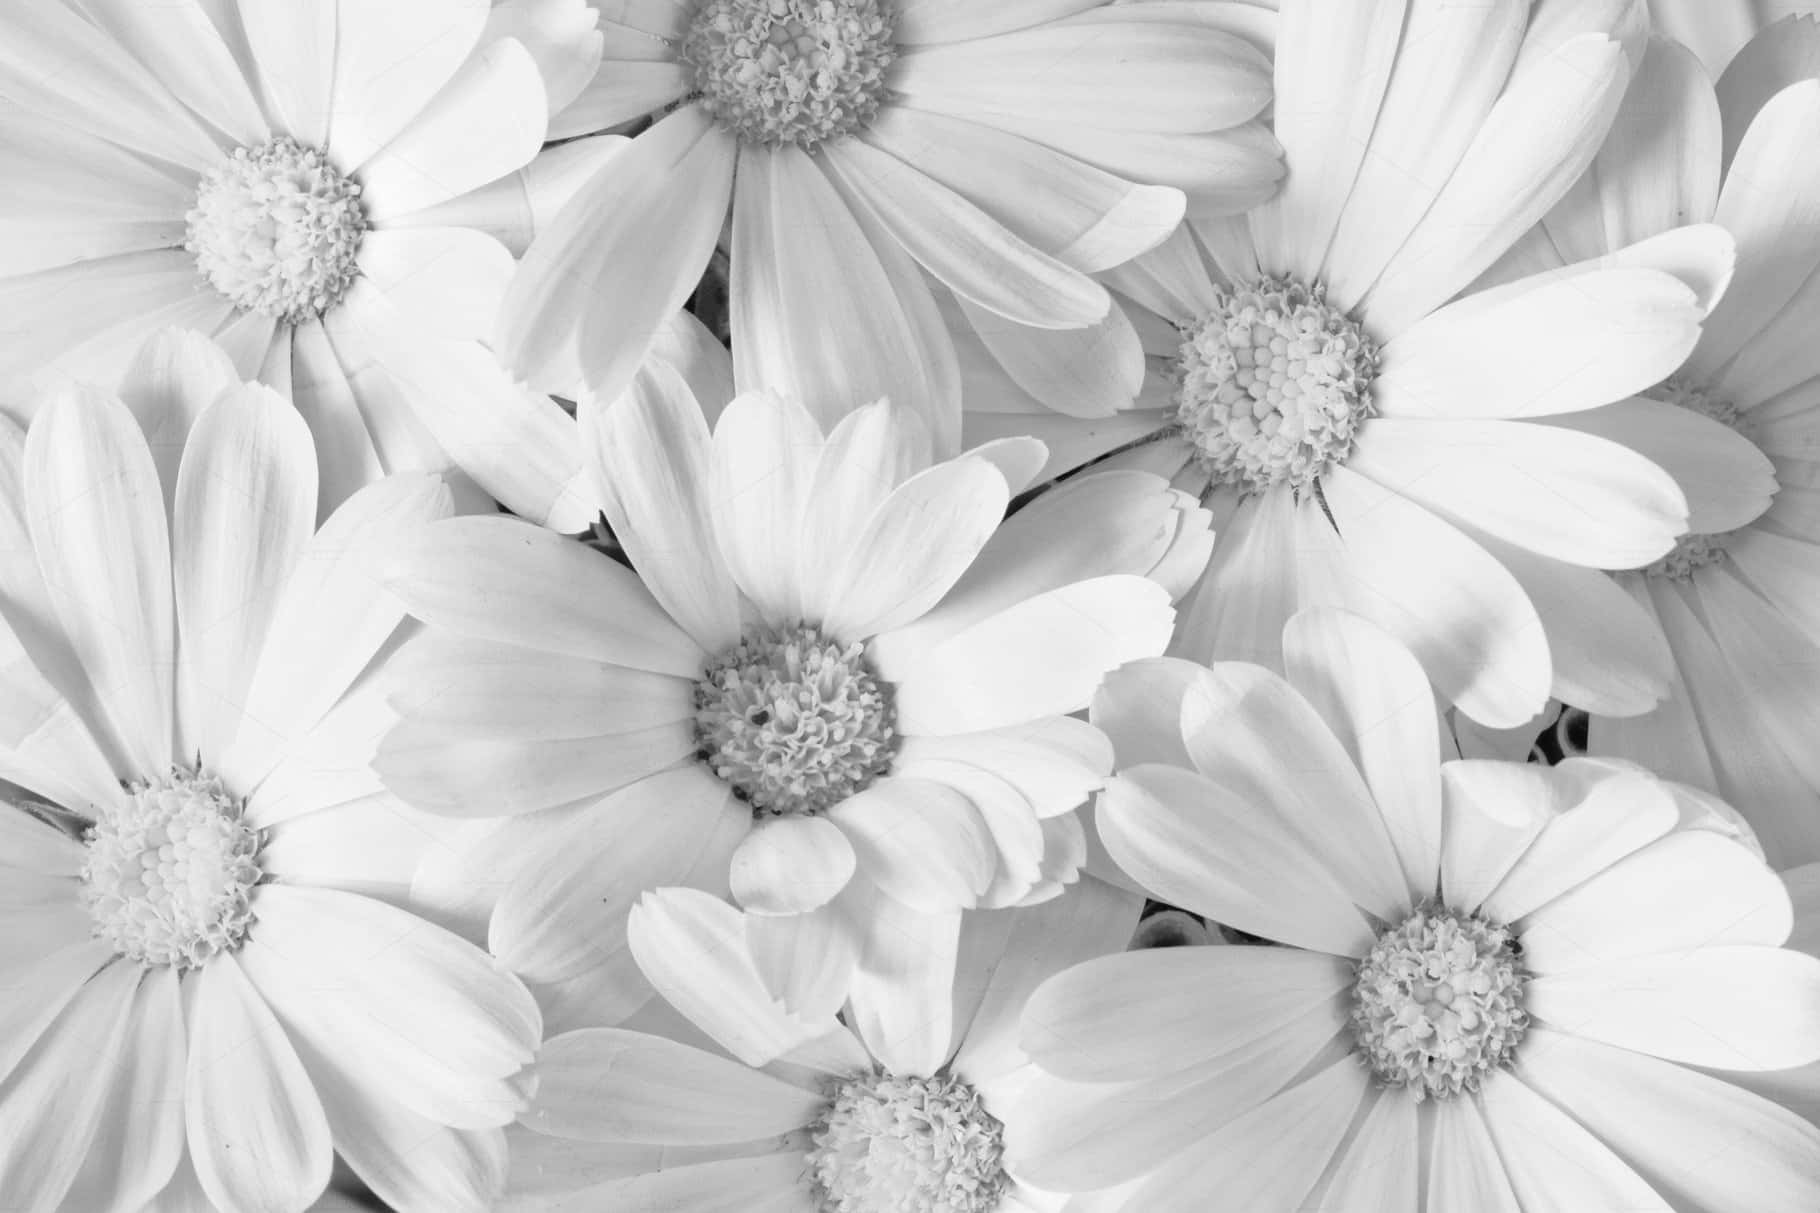 "A breathtaking beauty in White Flowers"